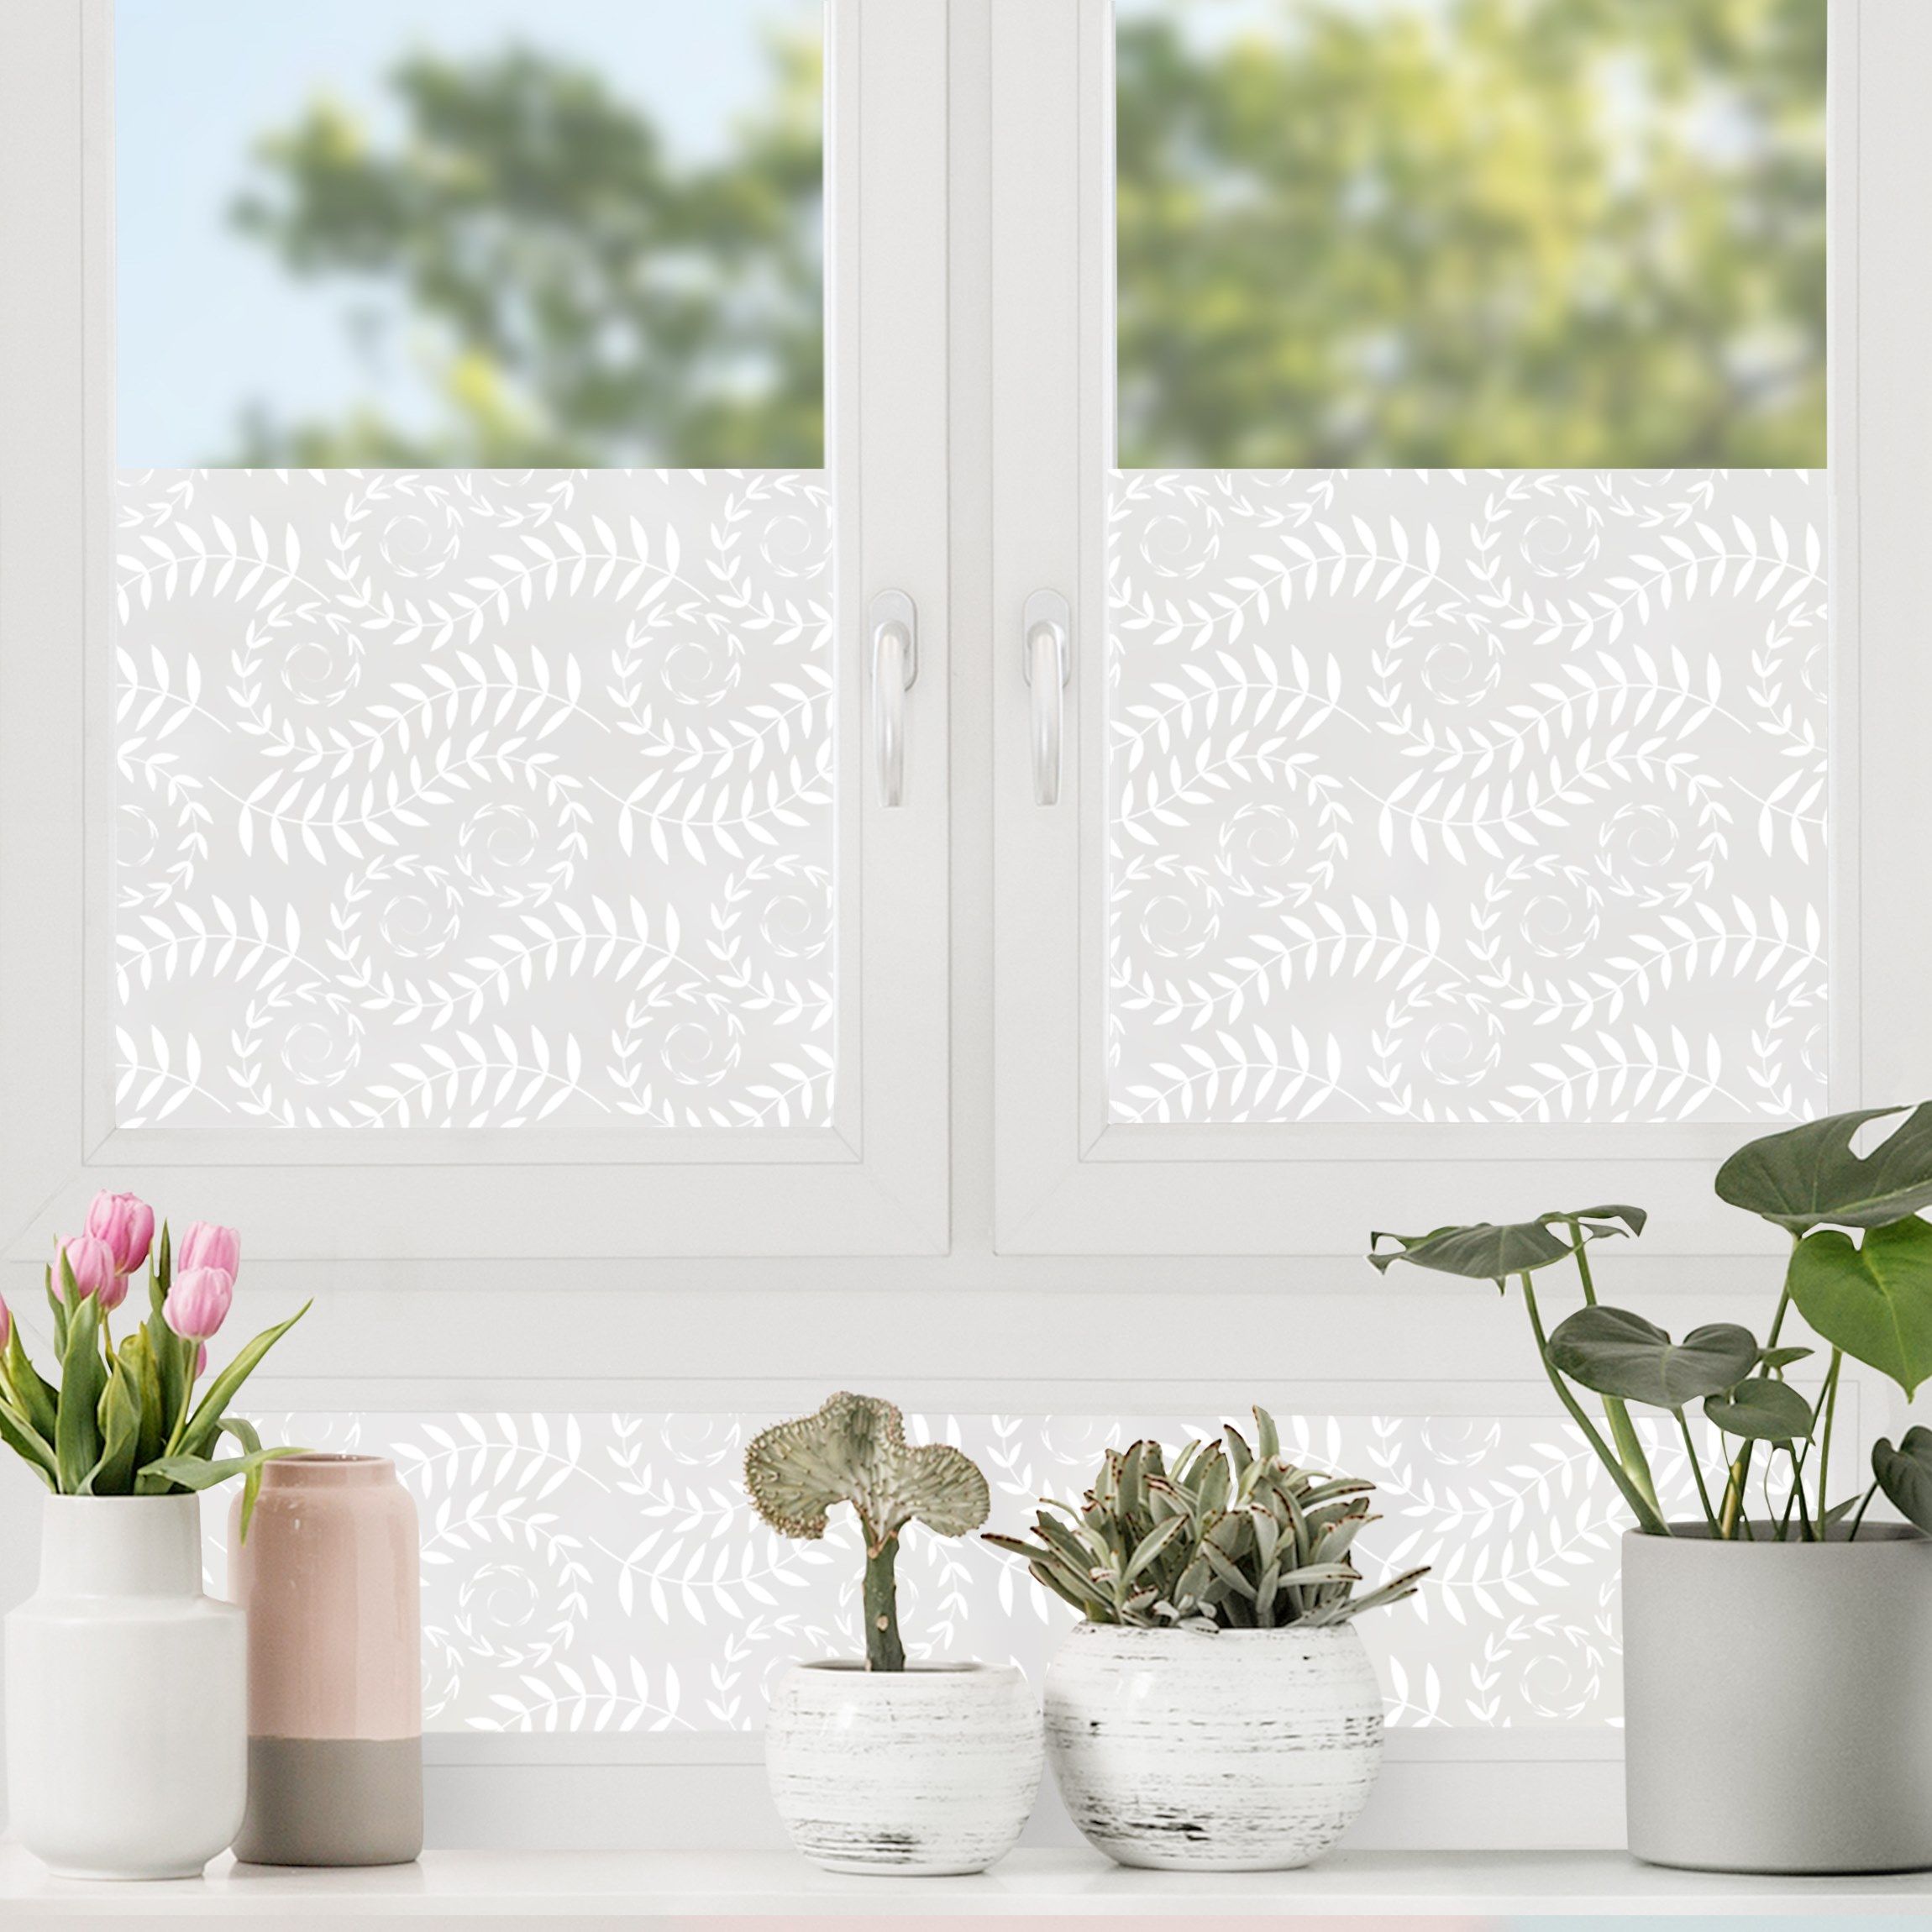 Fenster Sichtschutz Folie mit Blumenmotiv - Maßanfertigung - Musterladen